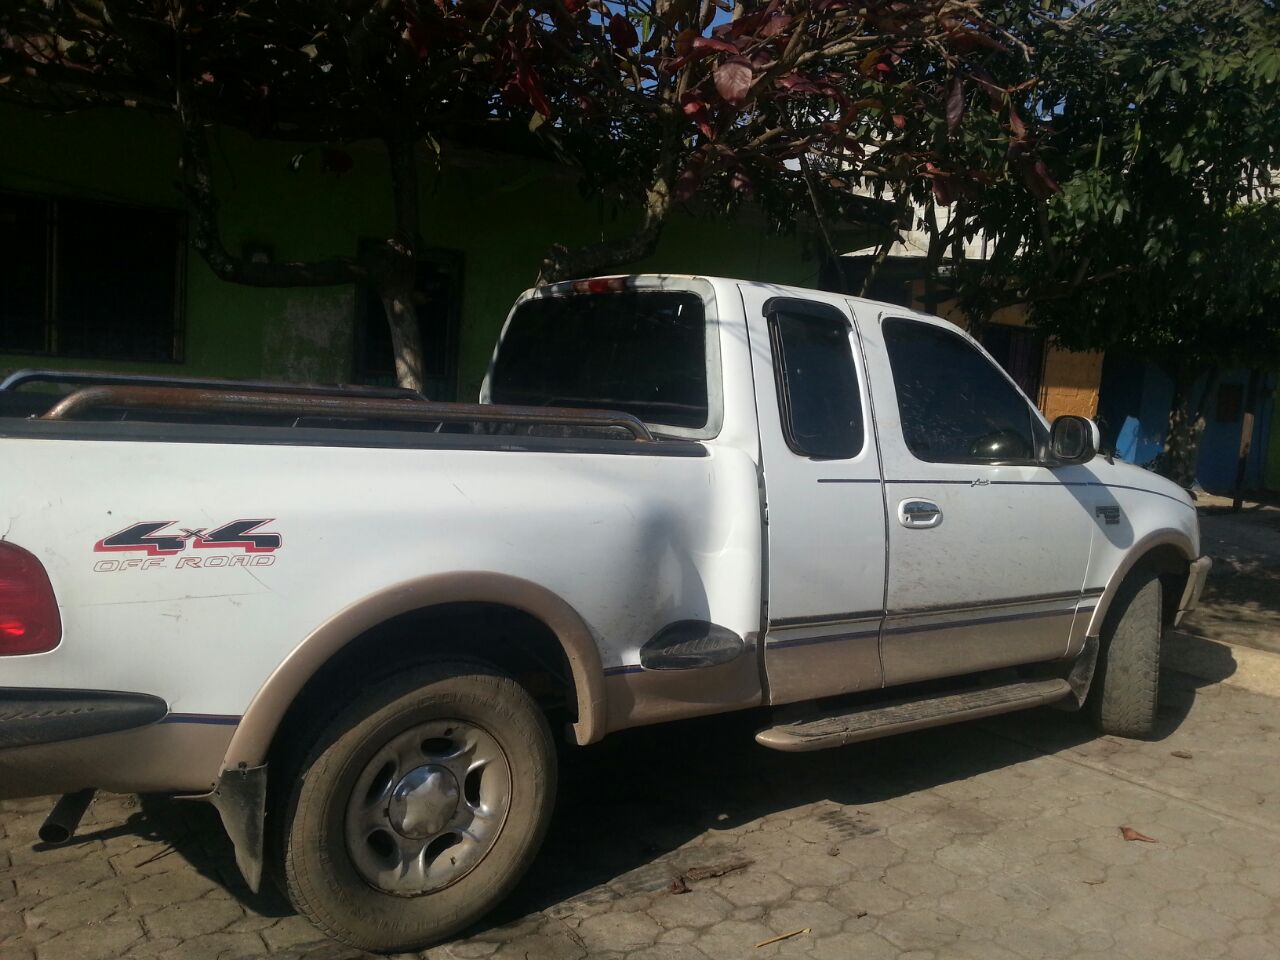 Robo de camioneta desata persecución policial en V. Carranza